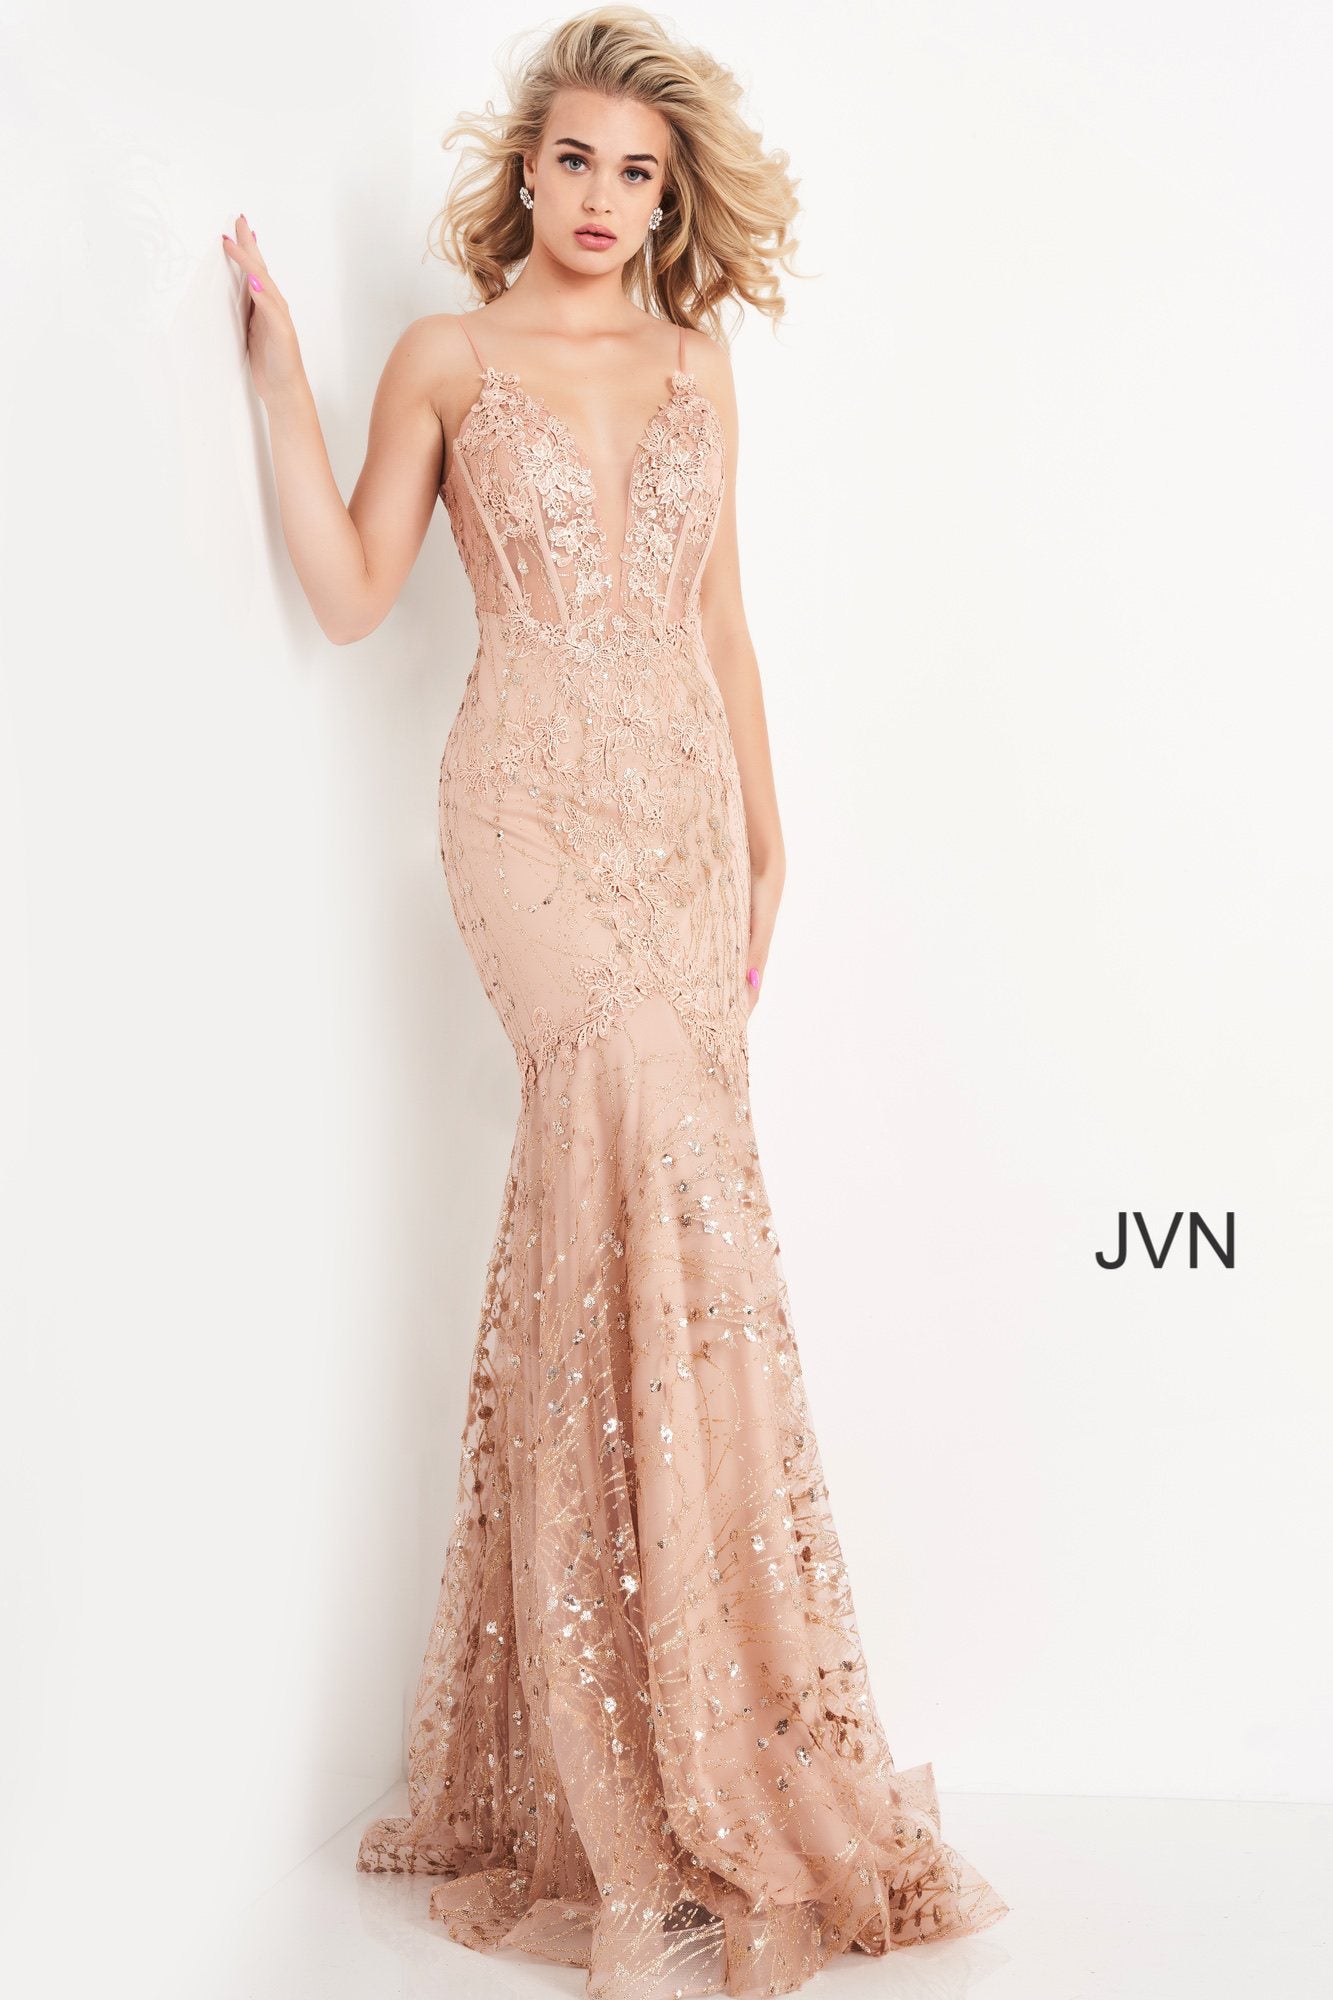 Sheer Corset Bodice Prom Dress By Jovani -JVN05788